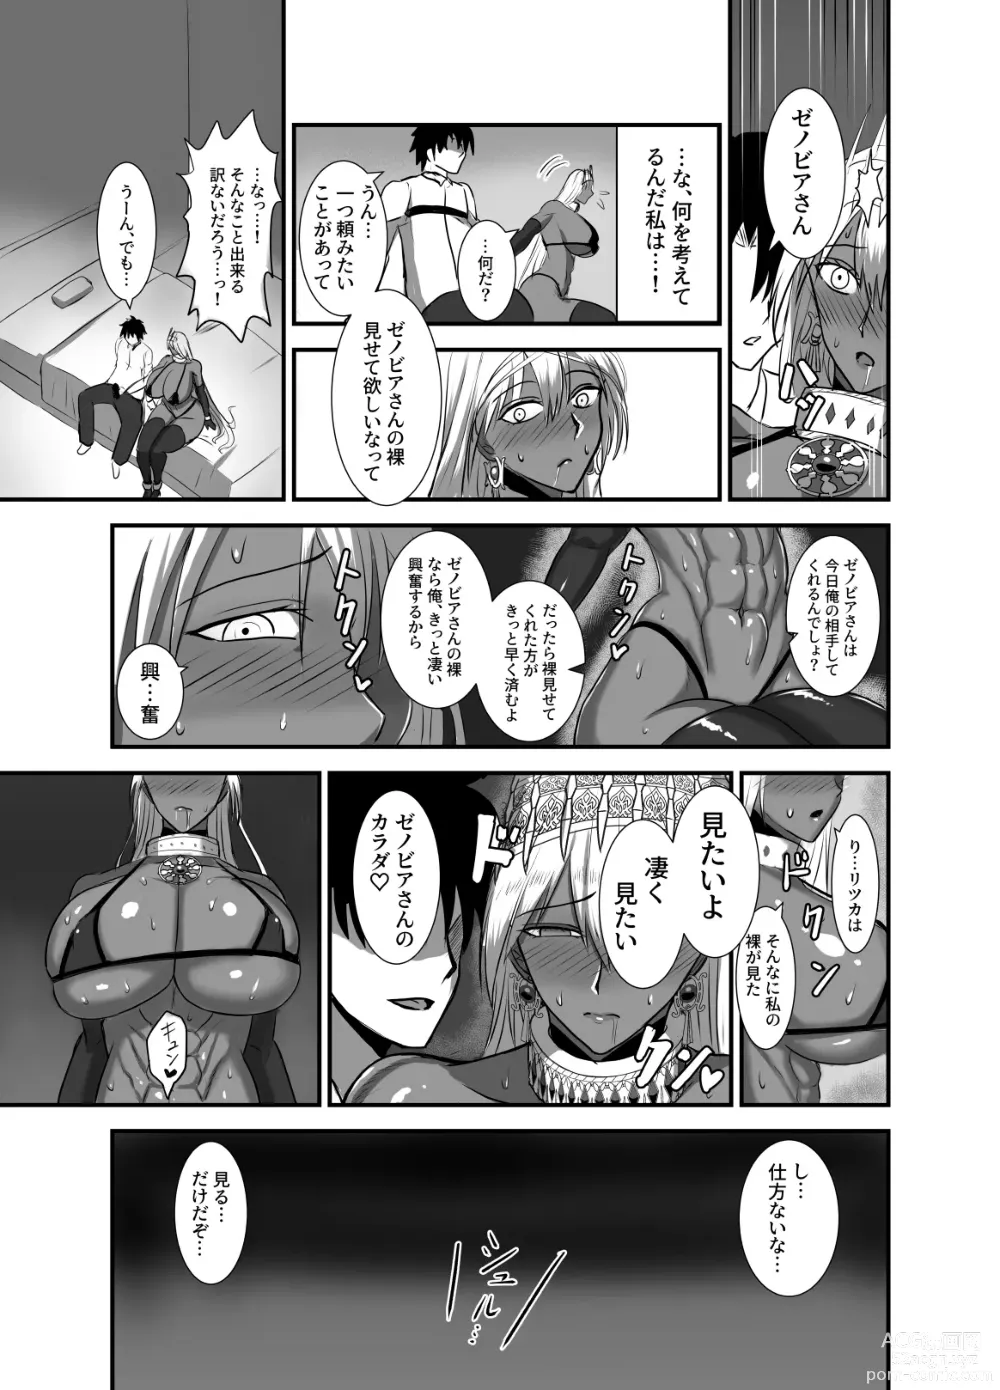 Page 8 of doujinshi Kore wa teishuku ihande wanai!